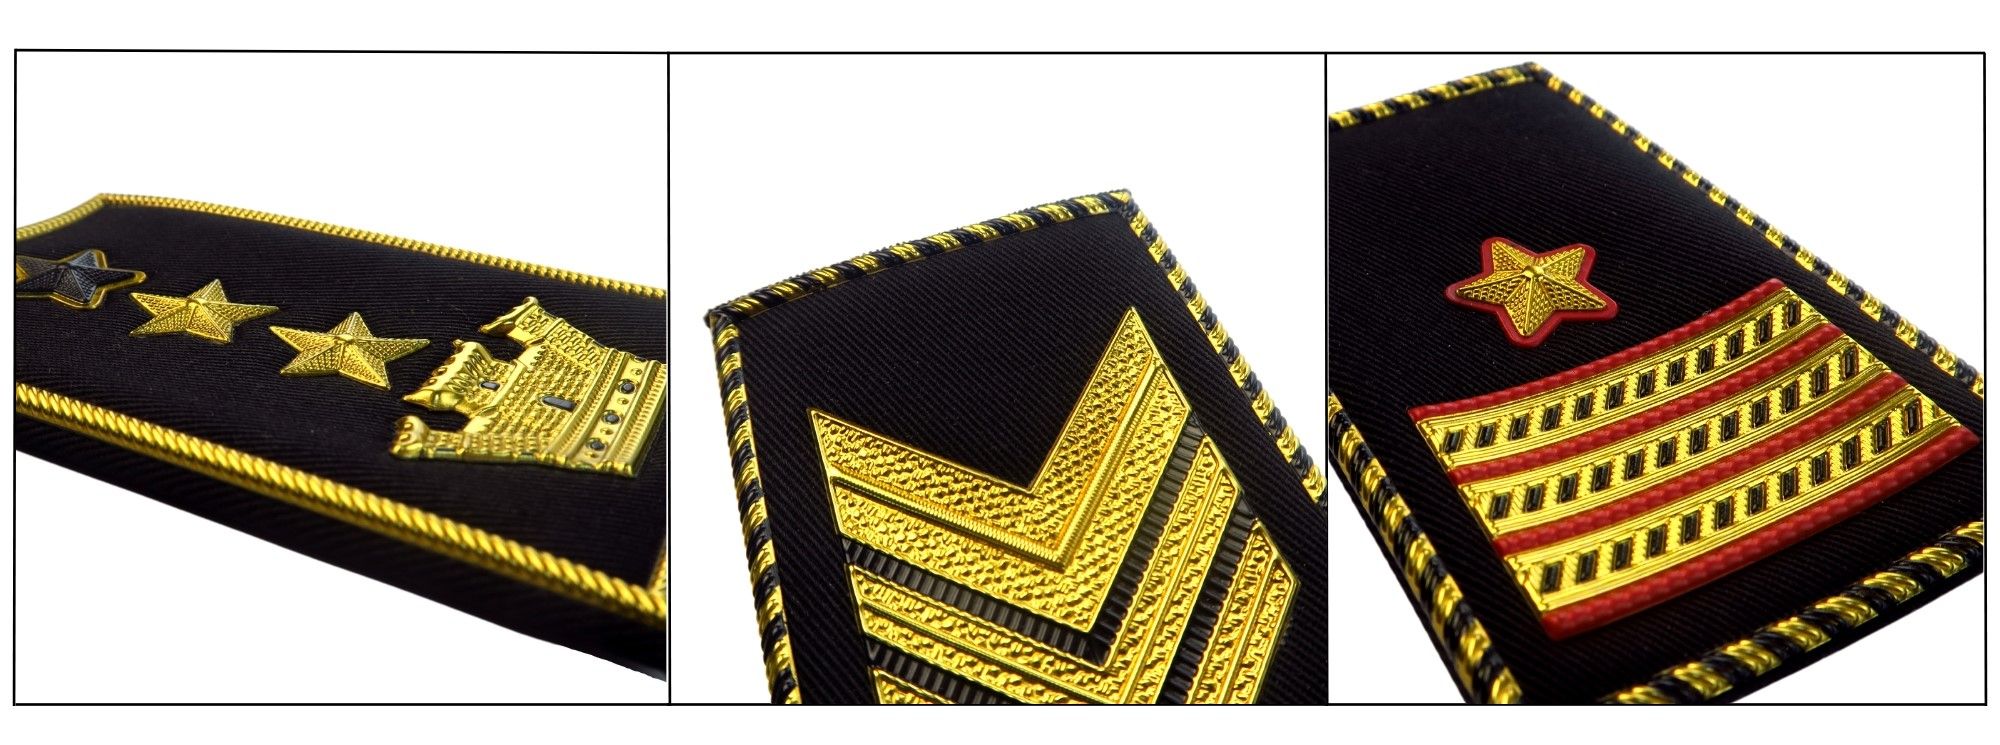 Ledarskap symboliserat, marin kommando skräddarsytt i kapten epåletter.